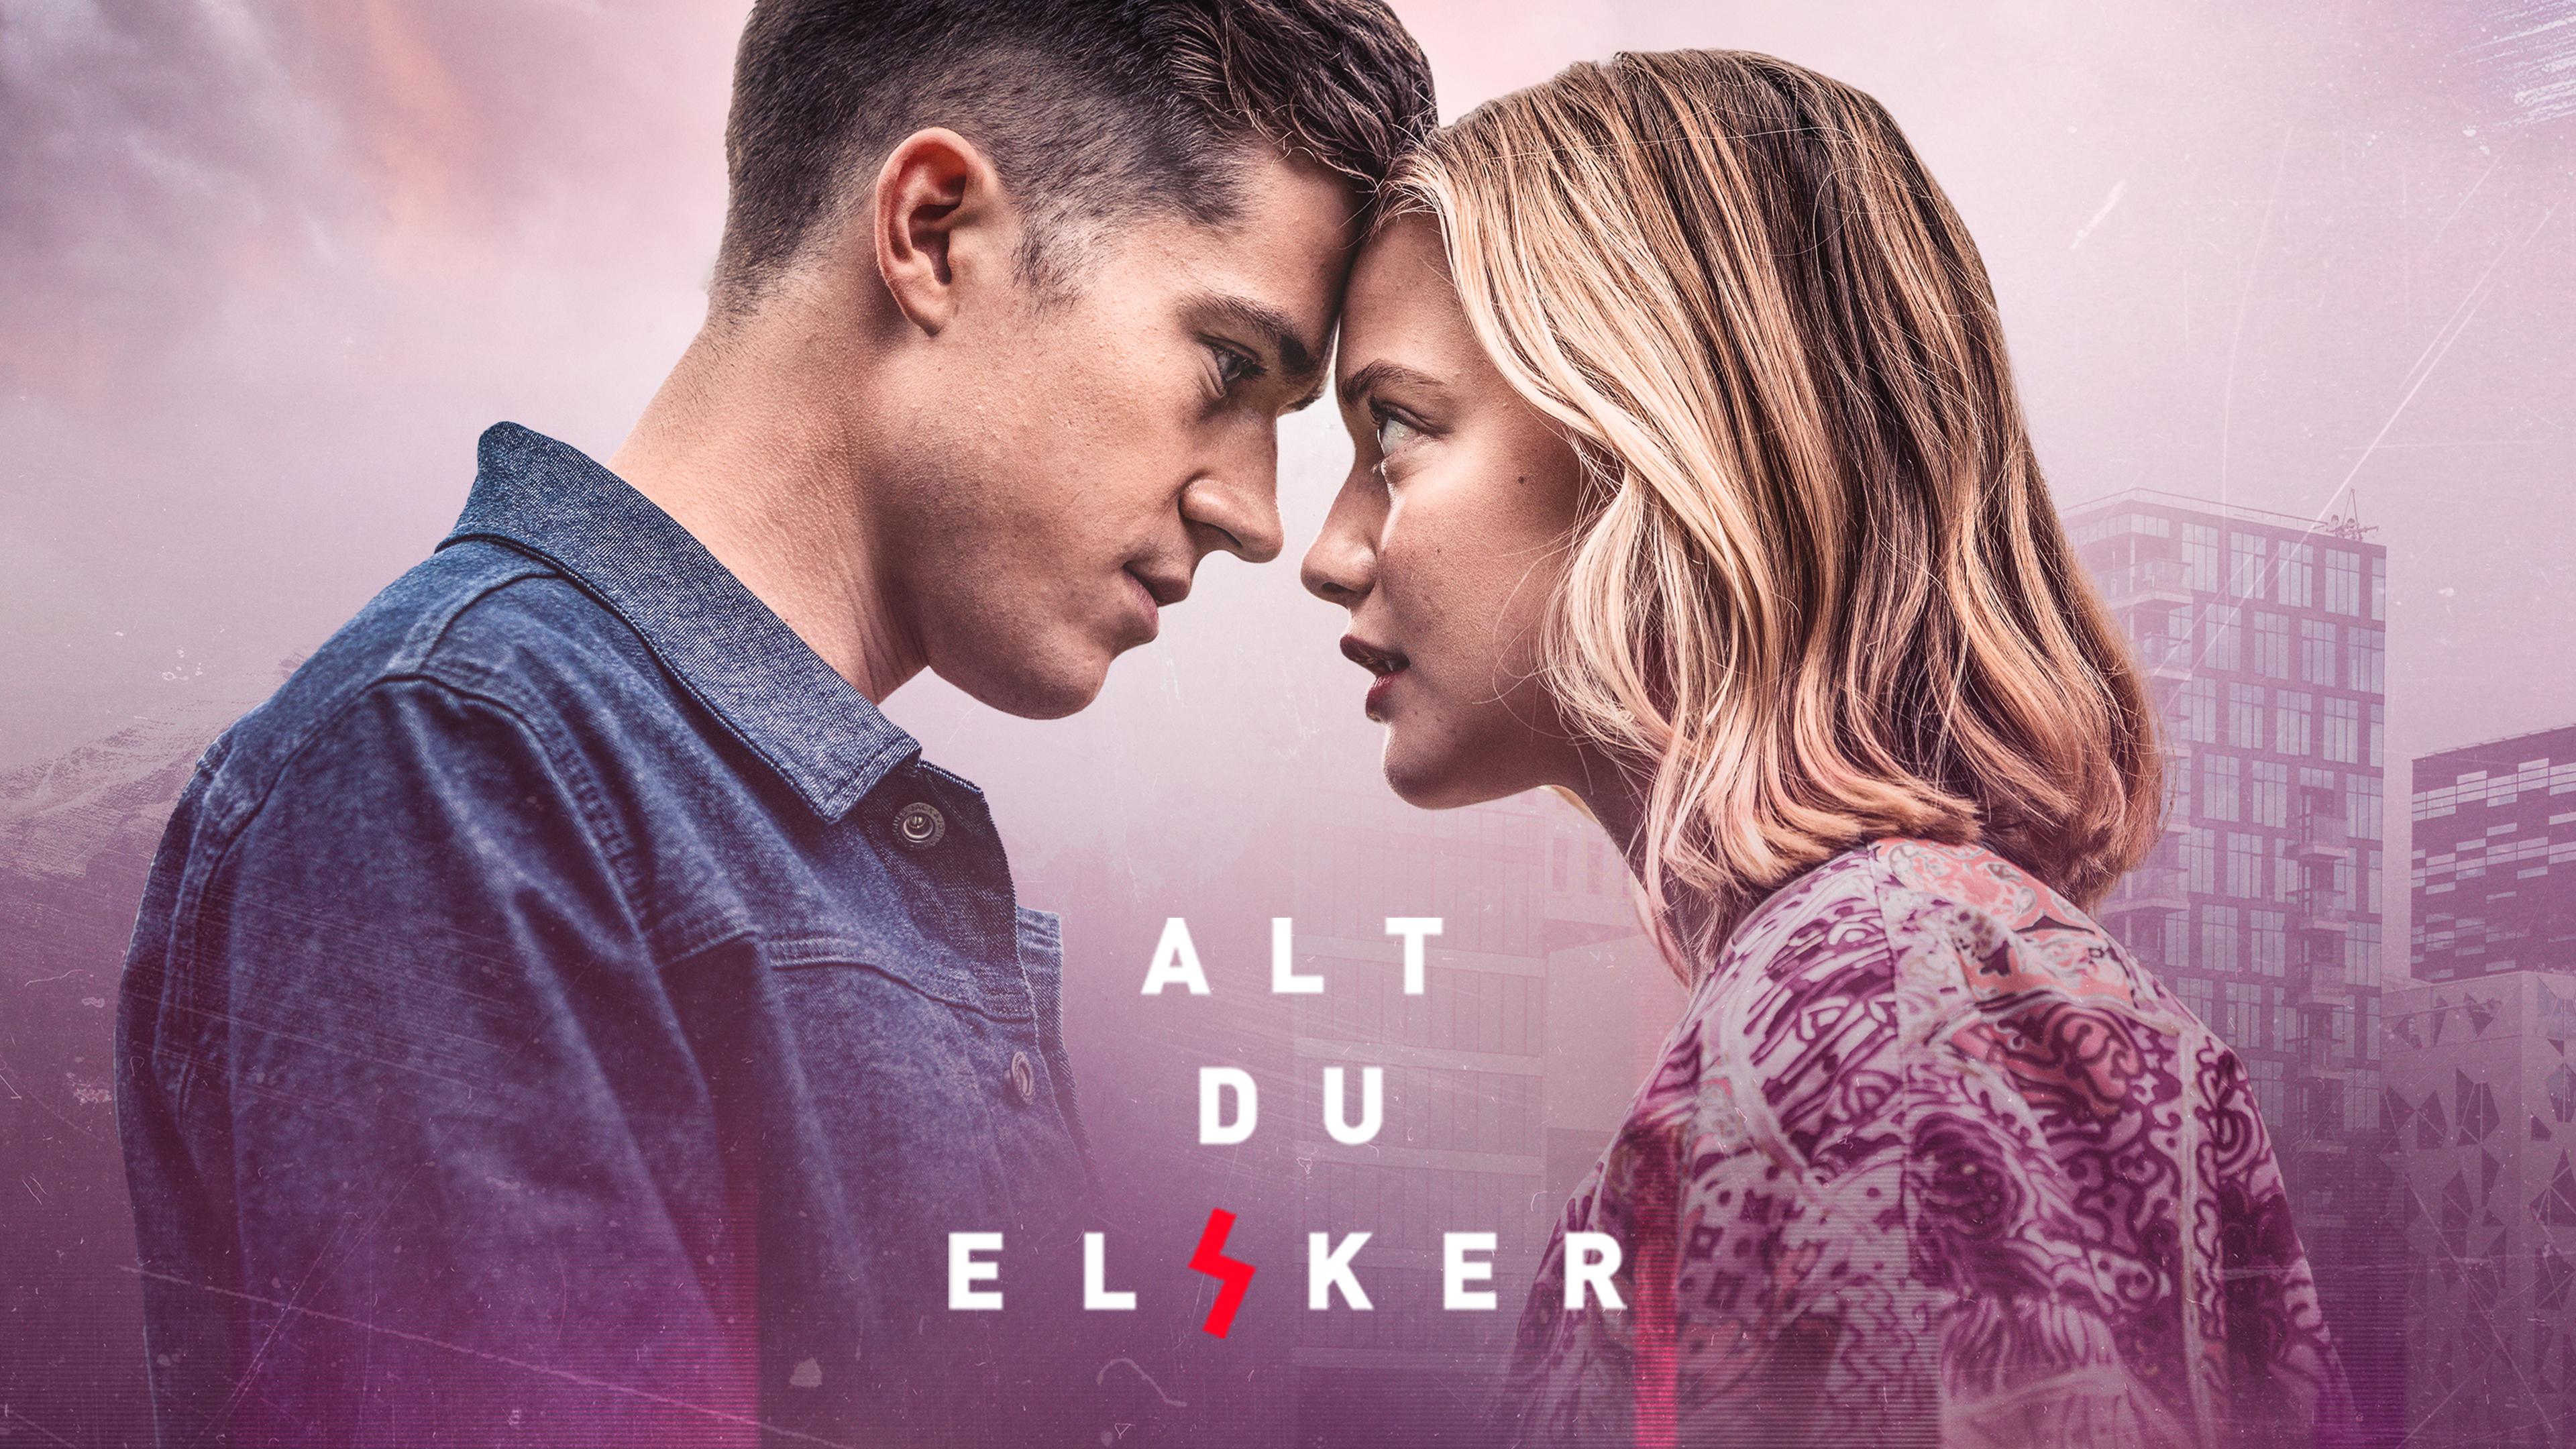 TV ratings for Alt Du Elsker in Brazil. Discovery+ TV series